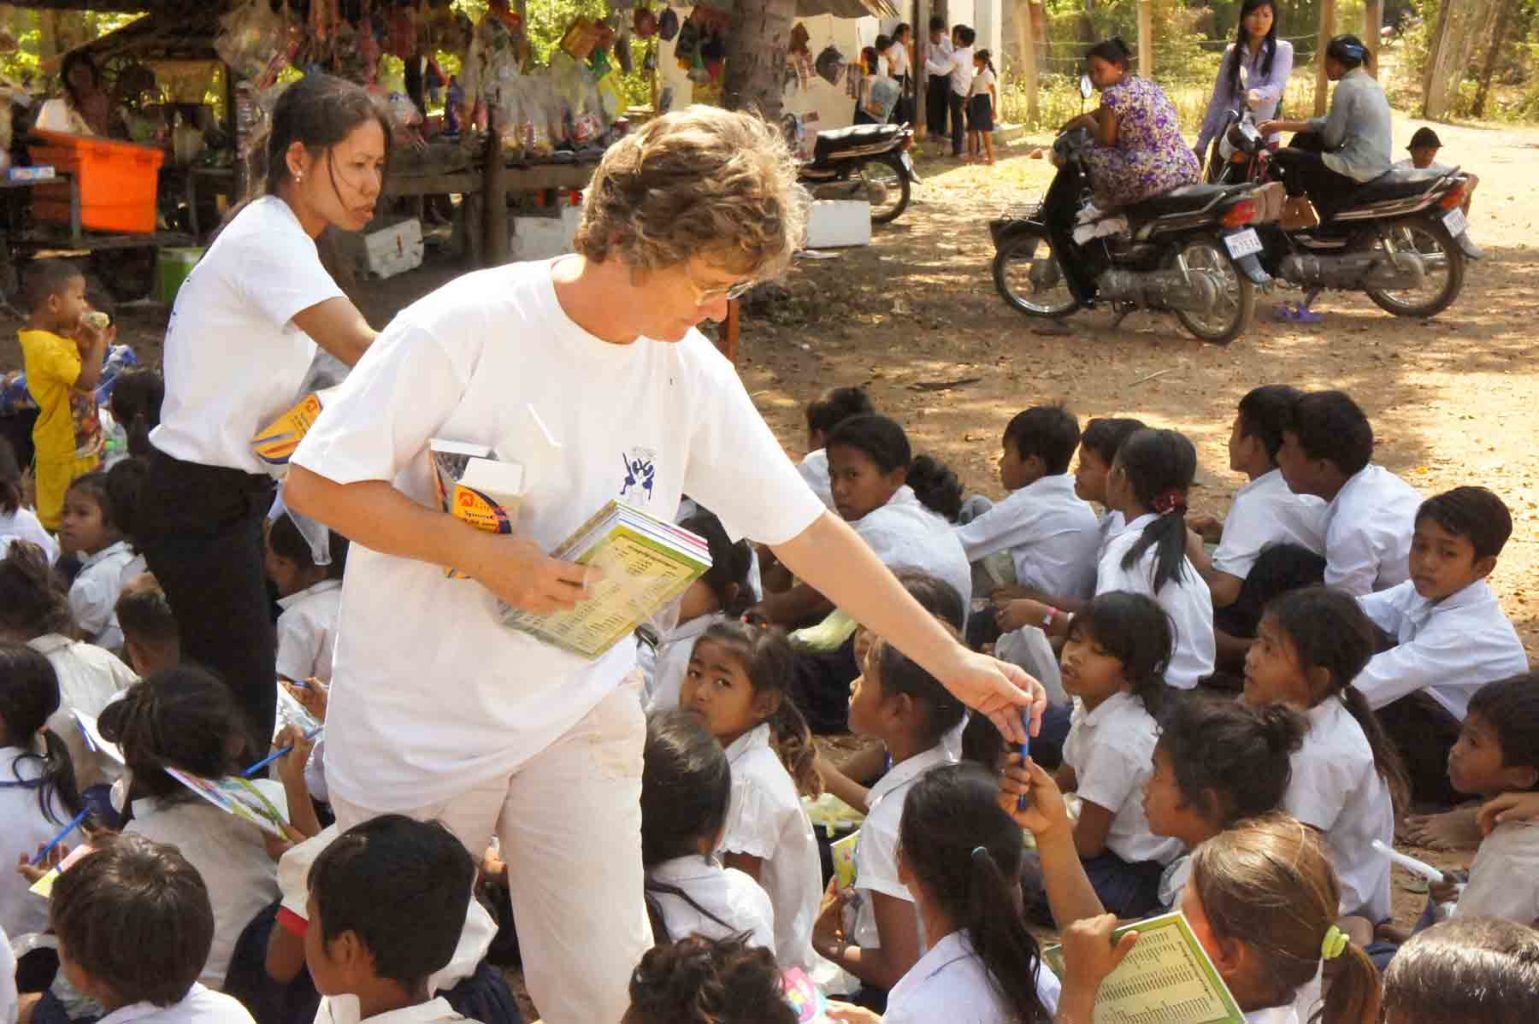 La neuchâteloise Nicole Reinhardt distribue du matériel scolaire à des enfants dans une école